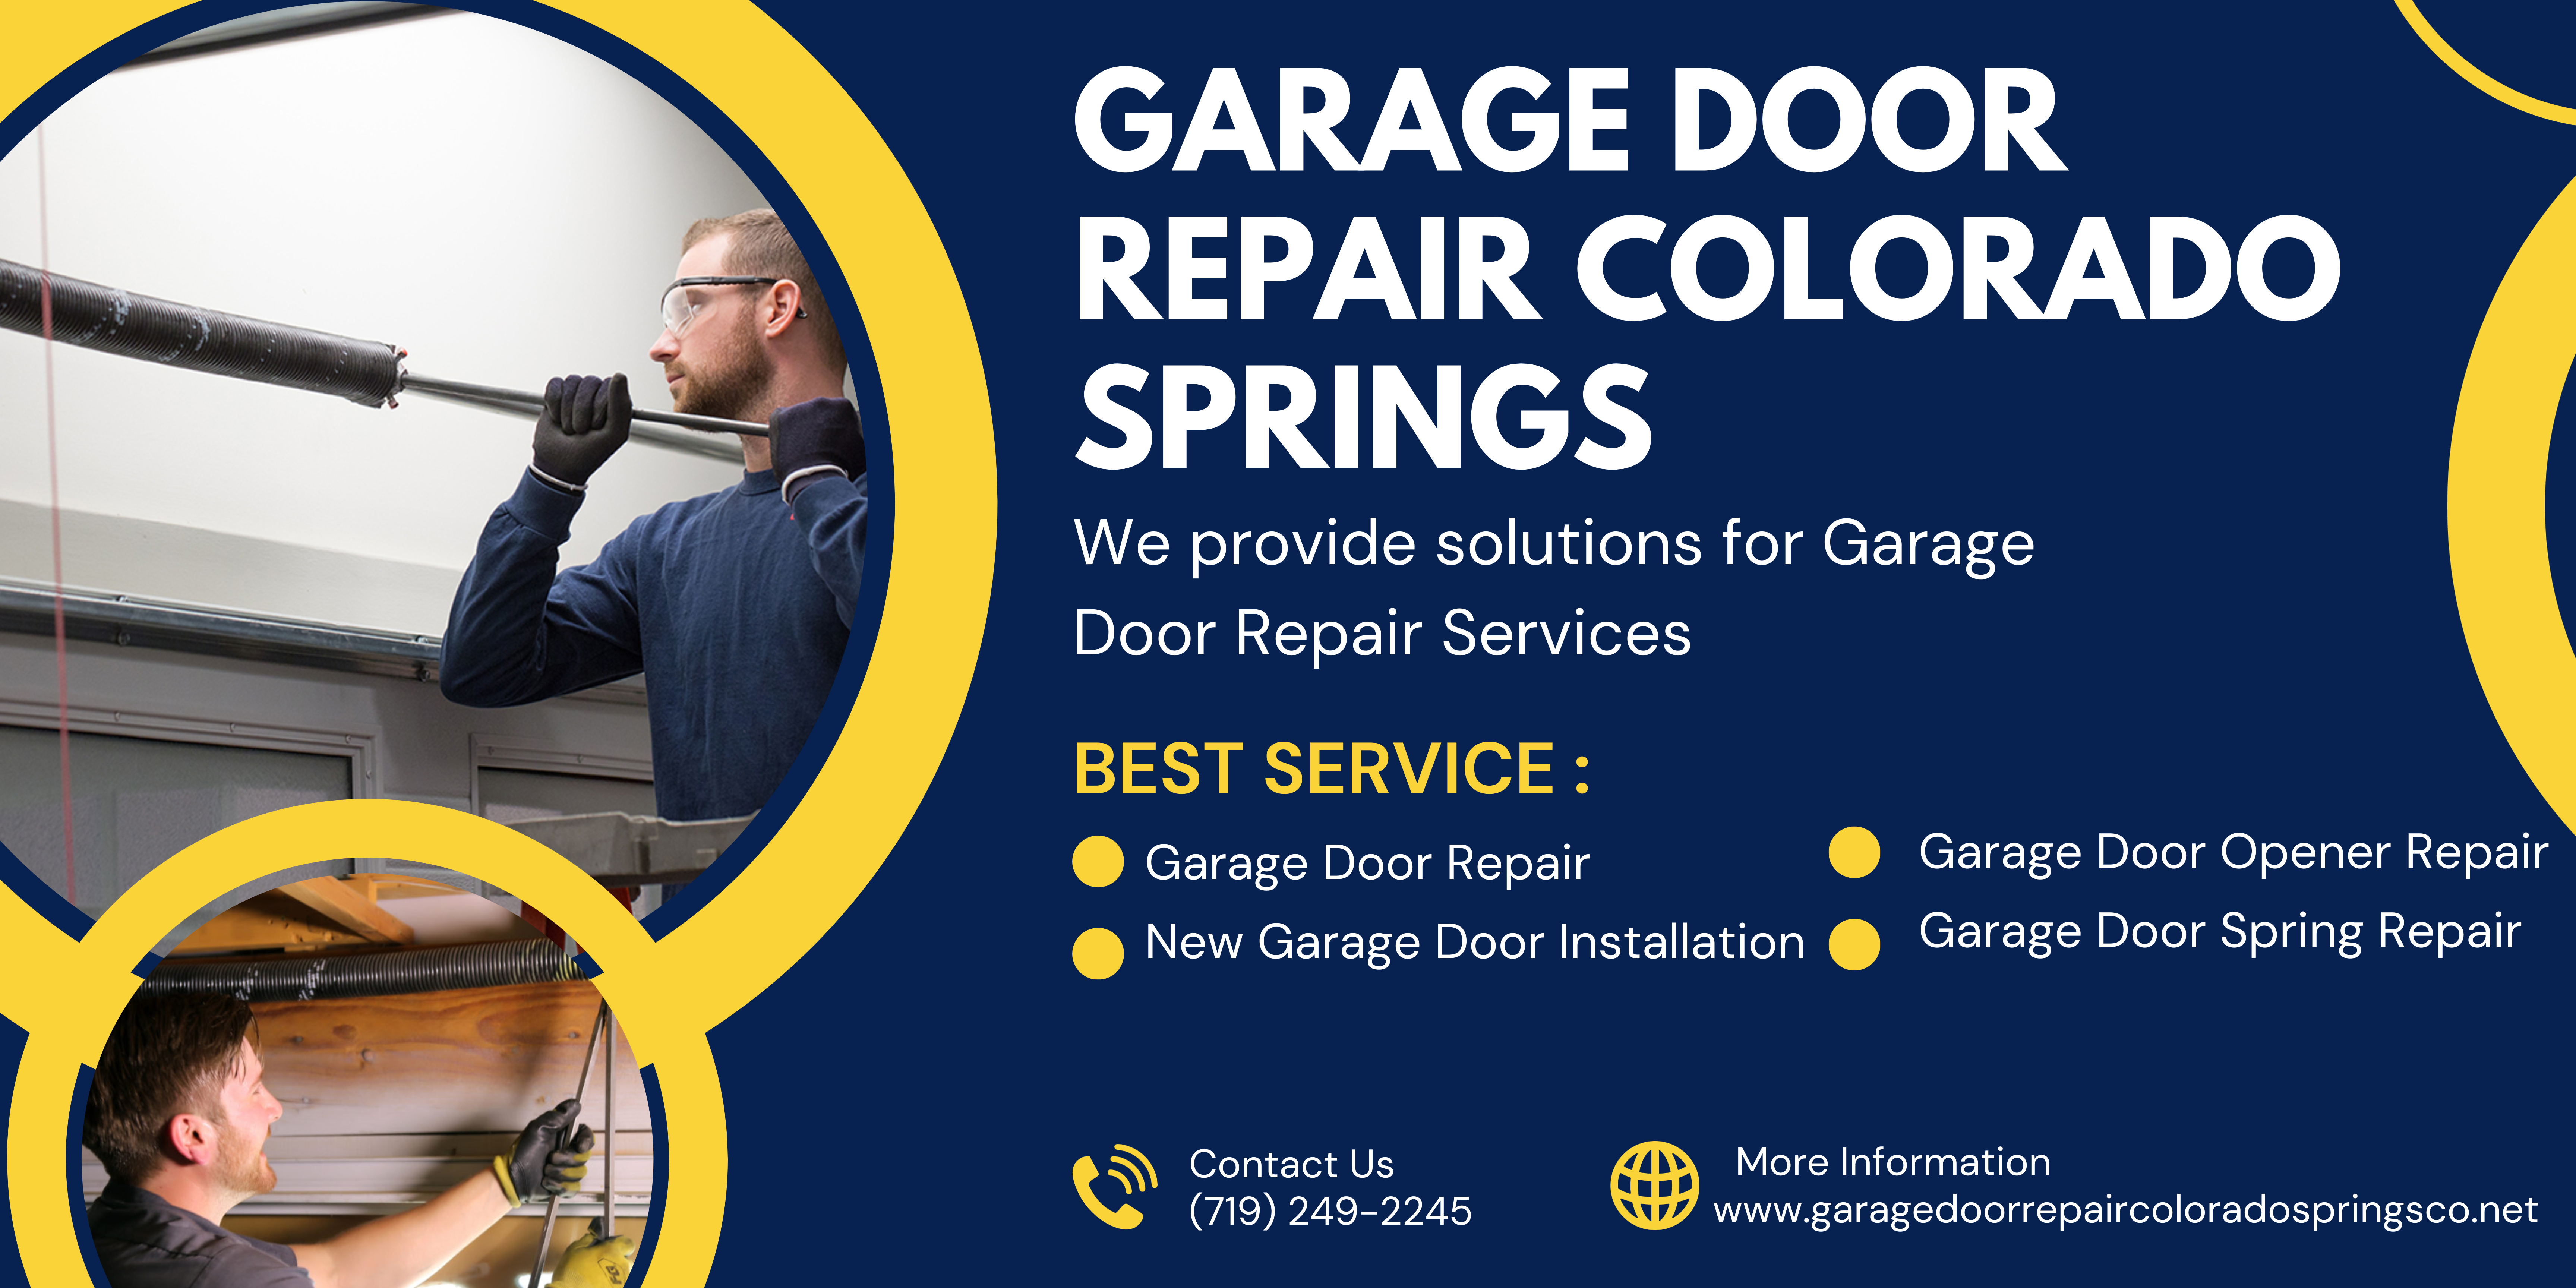 #1 Garage Door Repair Services in Colorado Springs